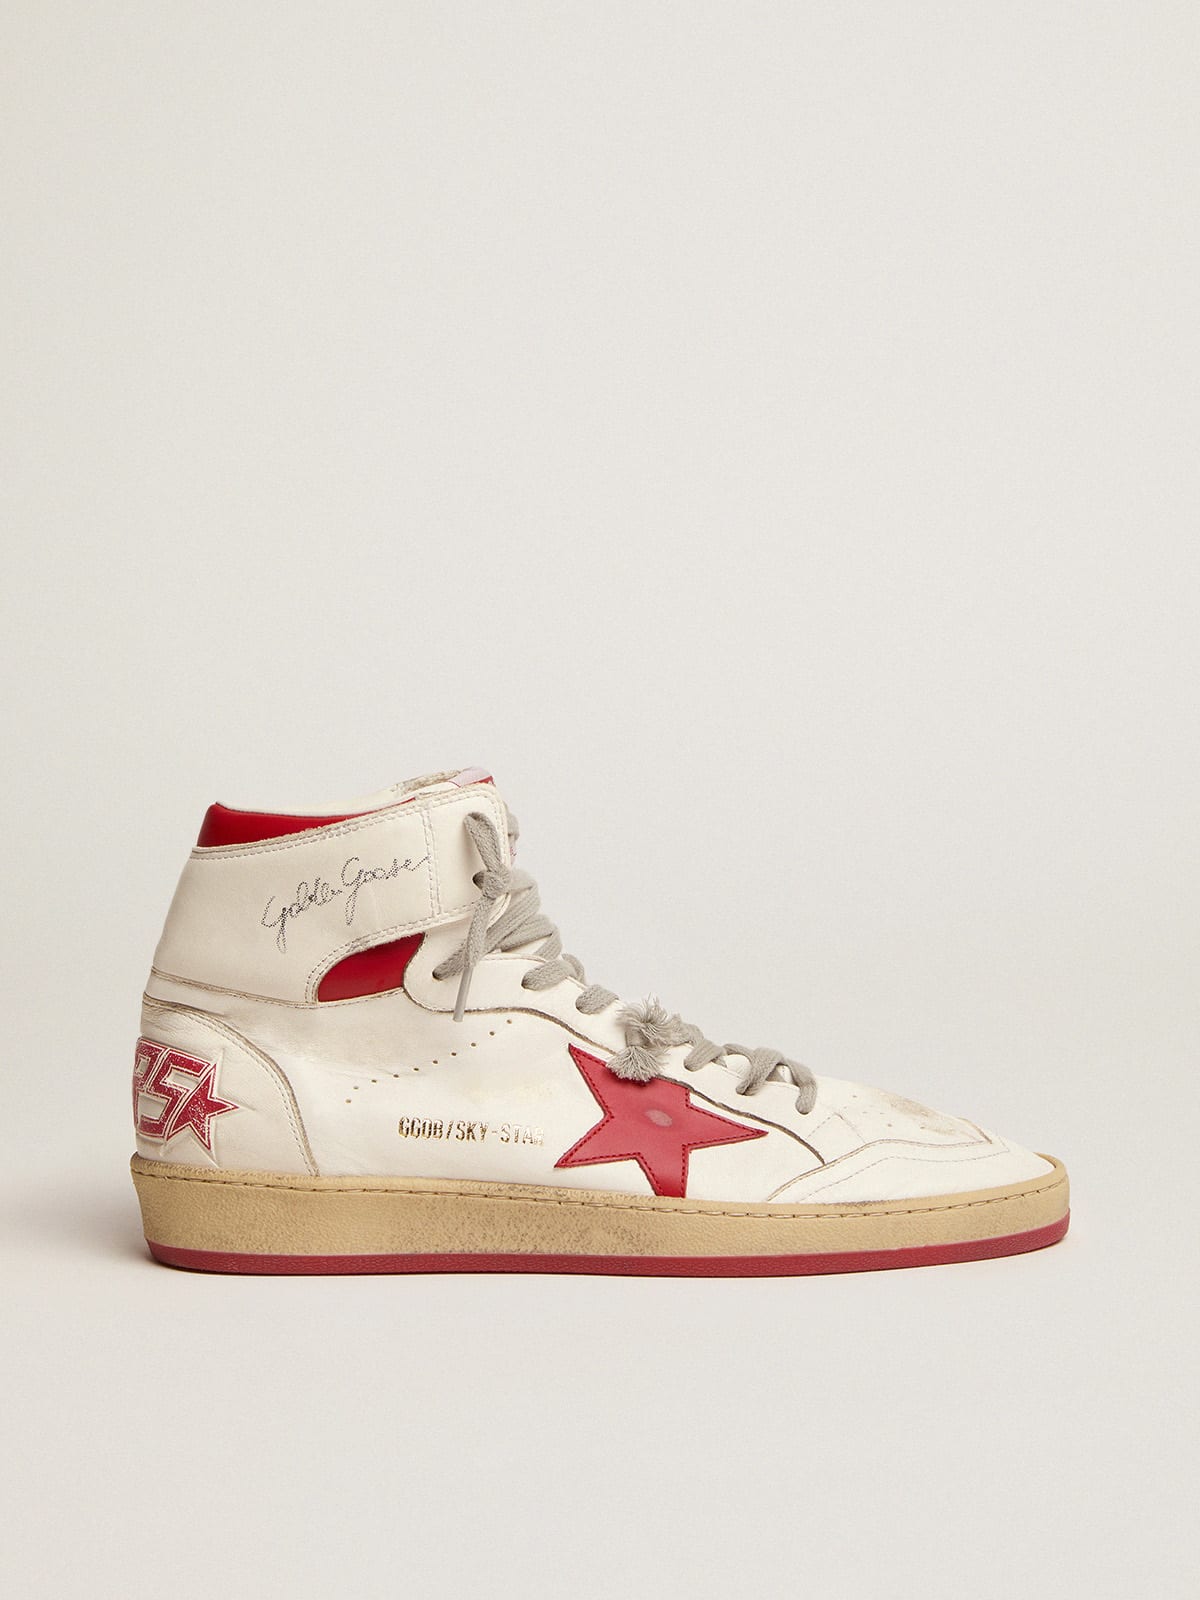 Golden Goose - Zapatillas deportivas Sky-Star de napa blanca con estrella y refuerzo del talón de piel roja in 